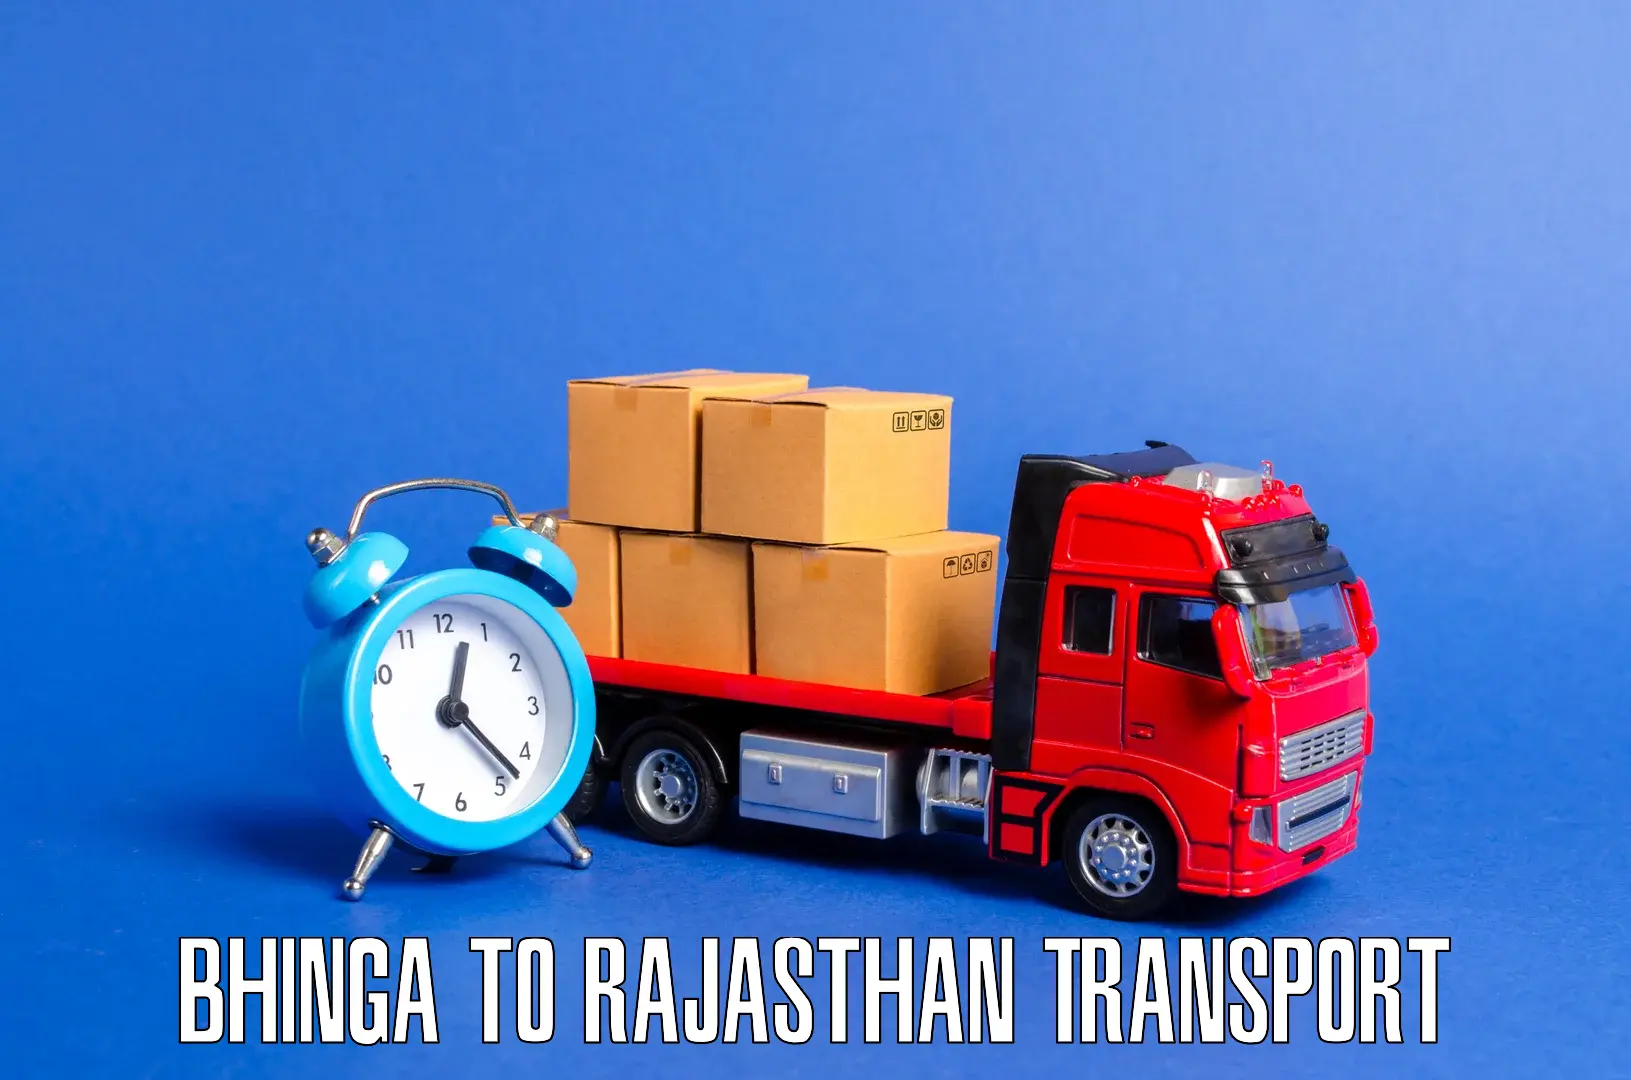 Online transport service Bhinga to Gogunda